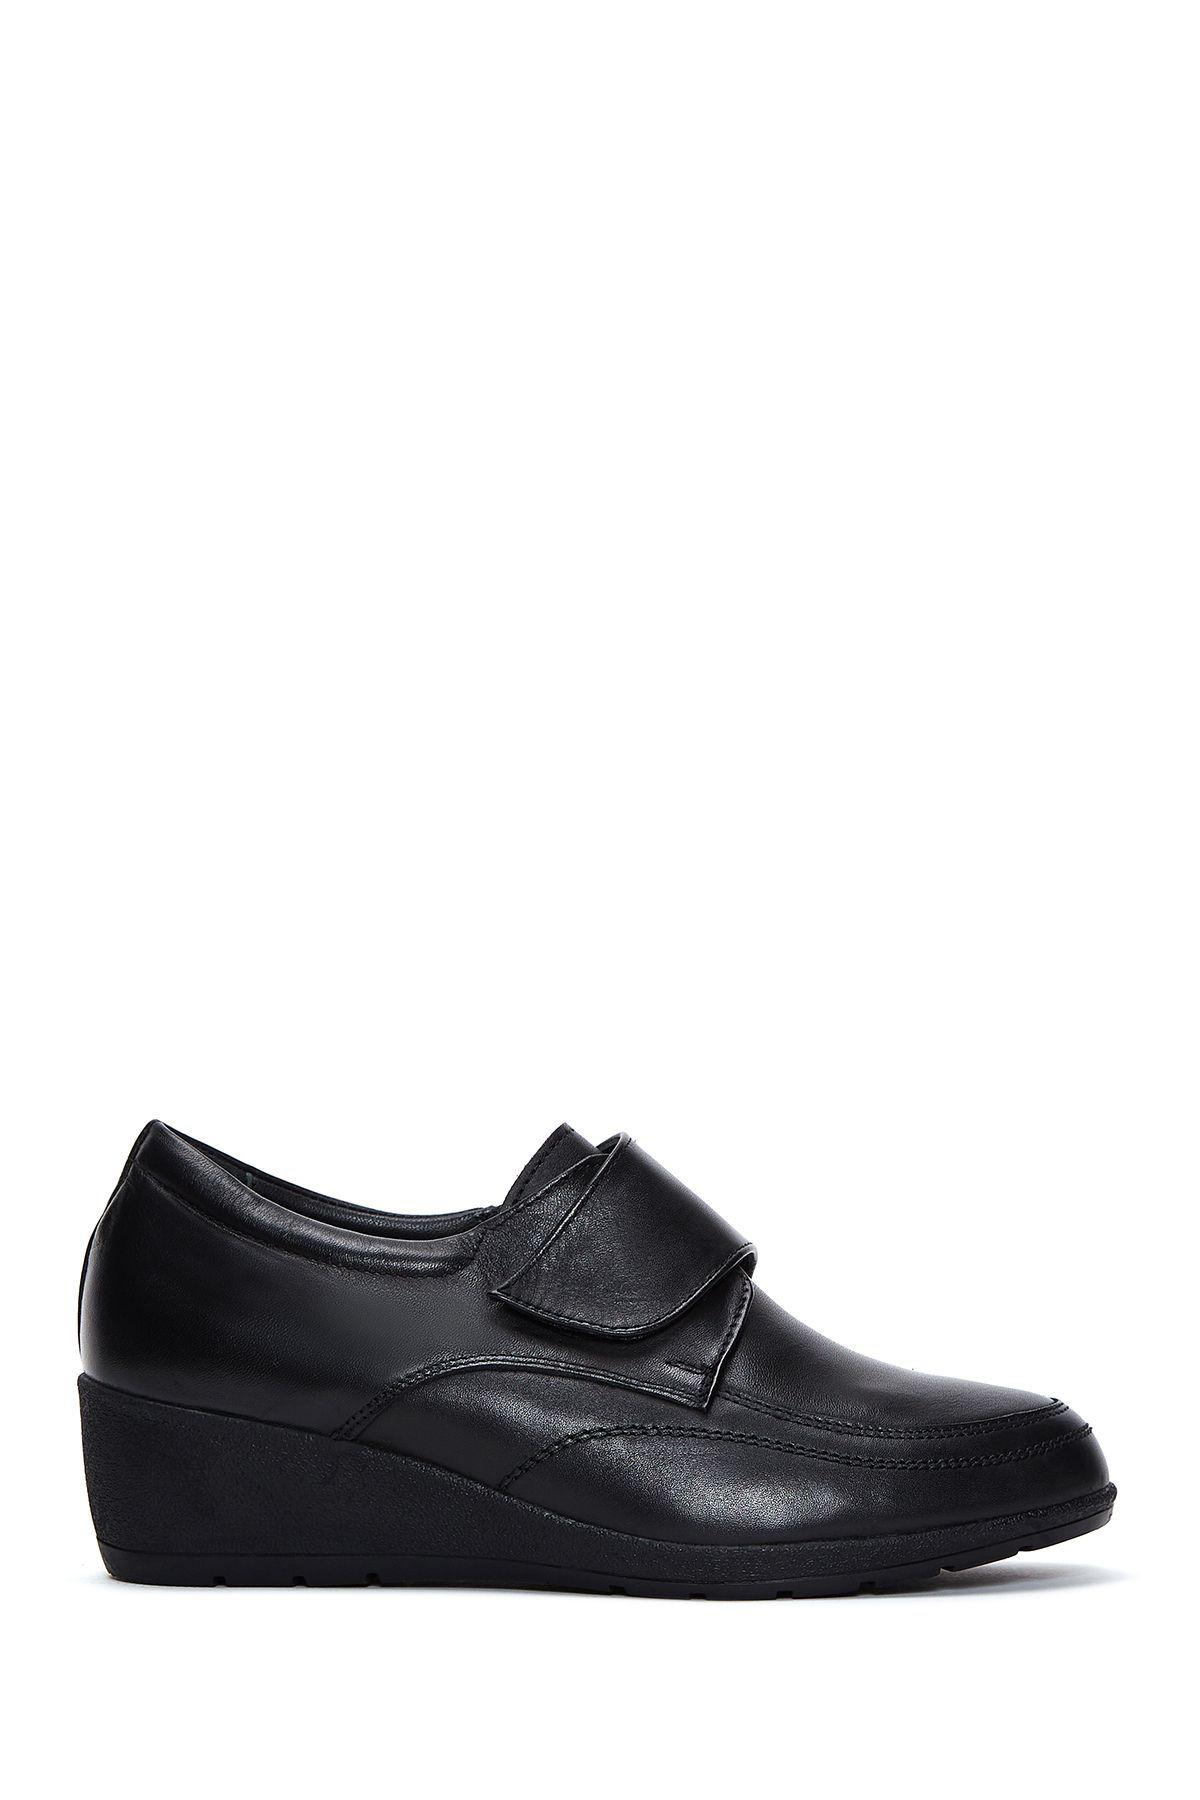 Derimod Kadın Siyah Deri Dolgu Topuk Comfort Ayakkabı